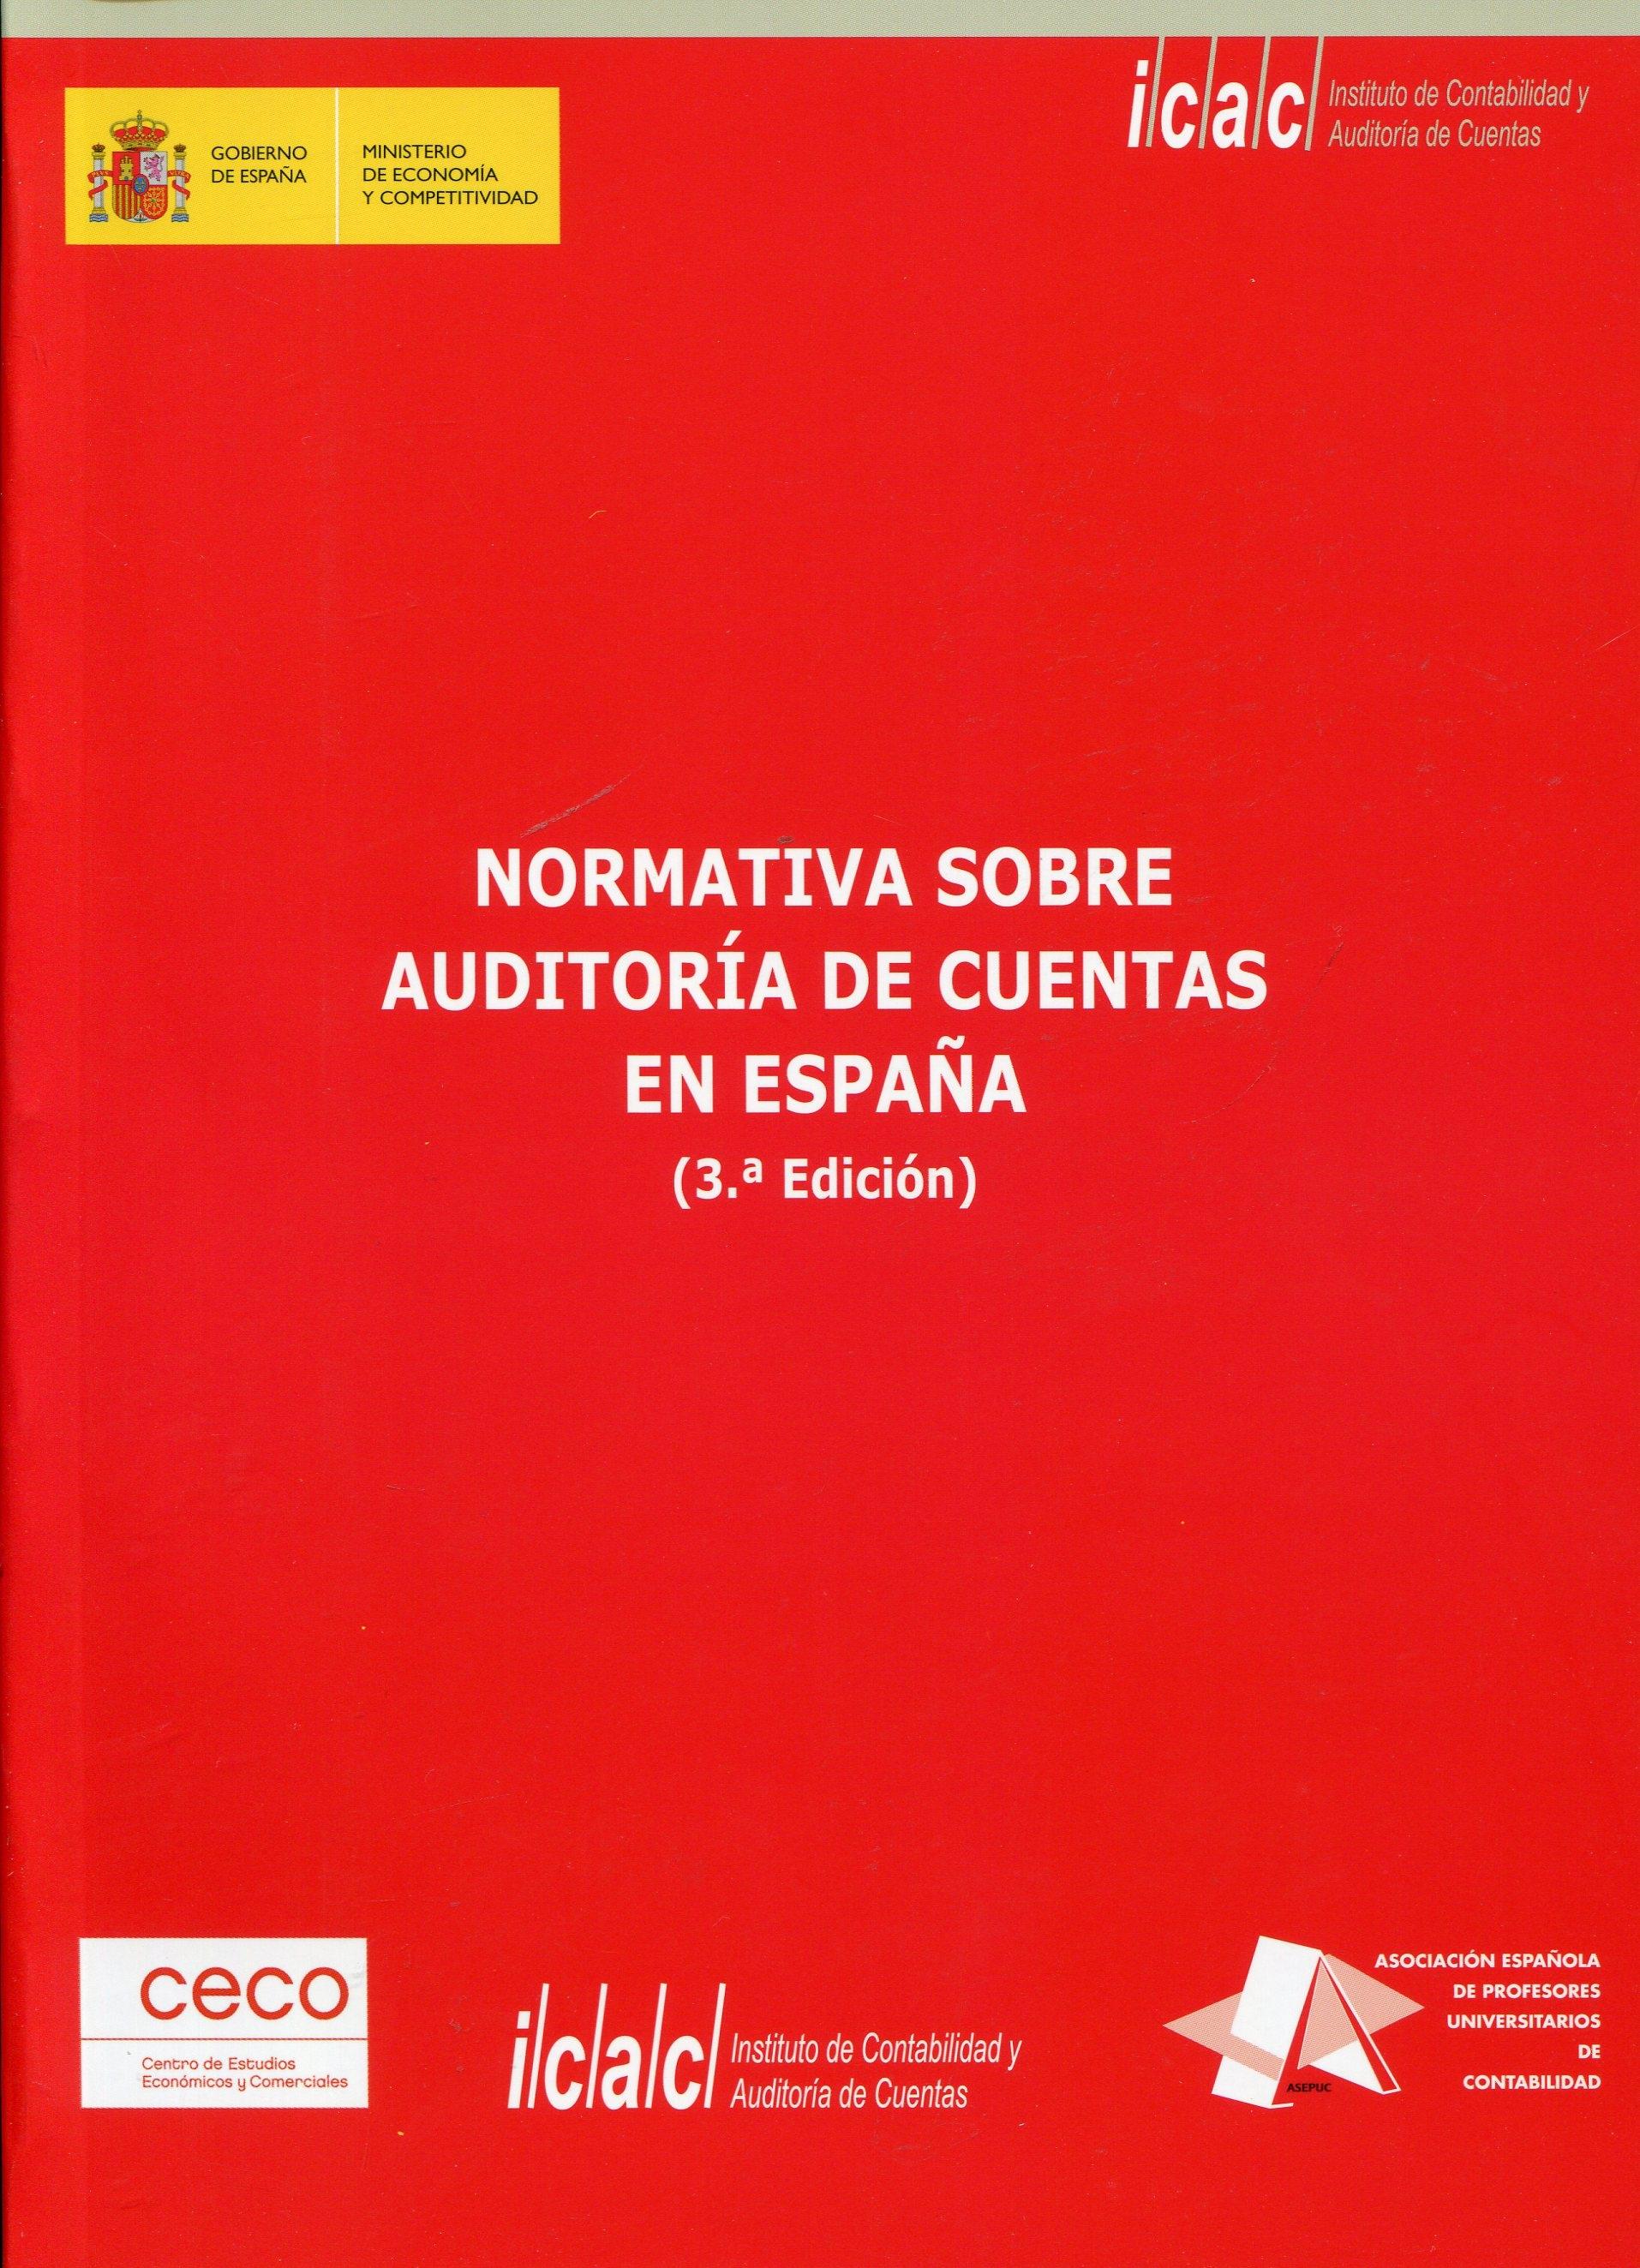 Normativa sobre auditoría de cuentas en España.